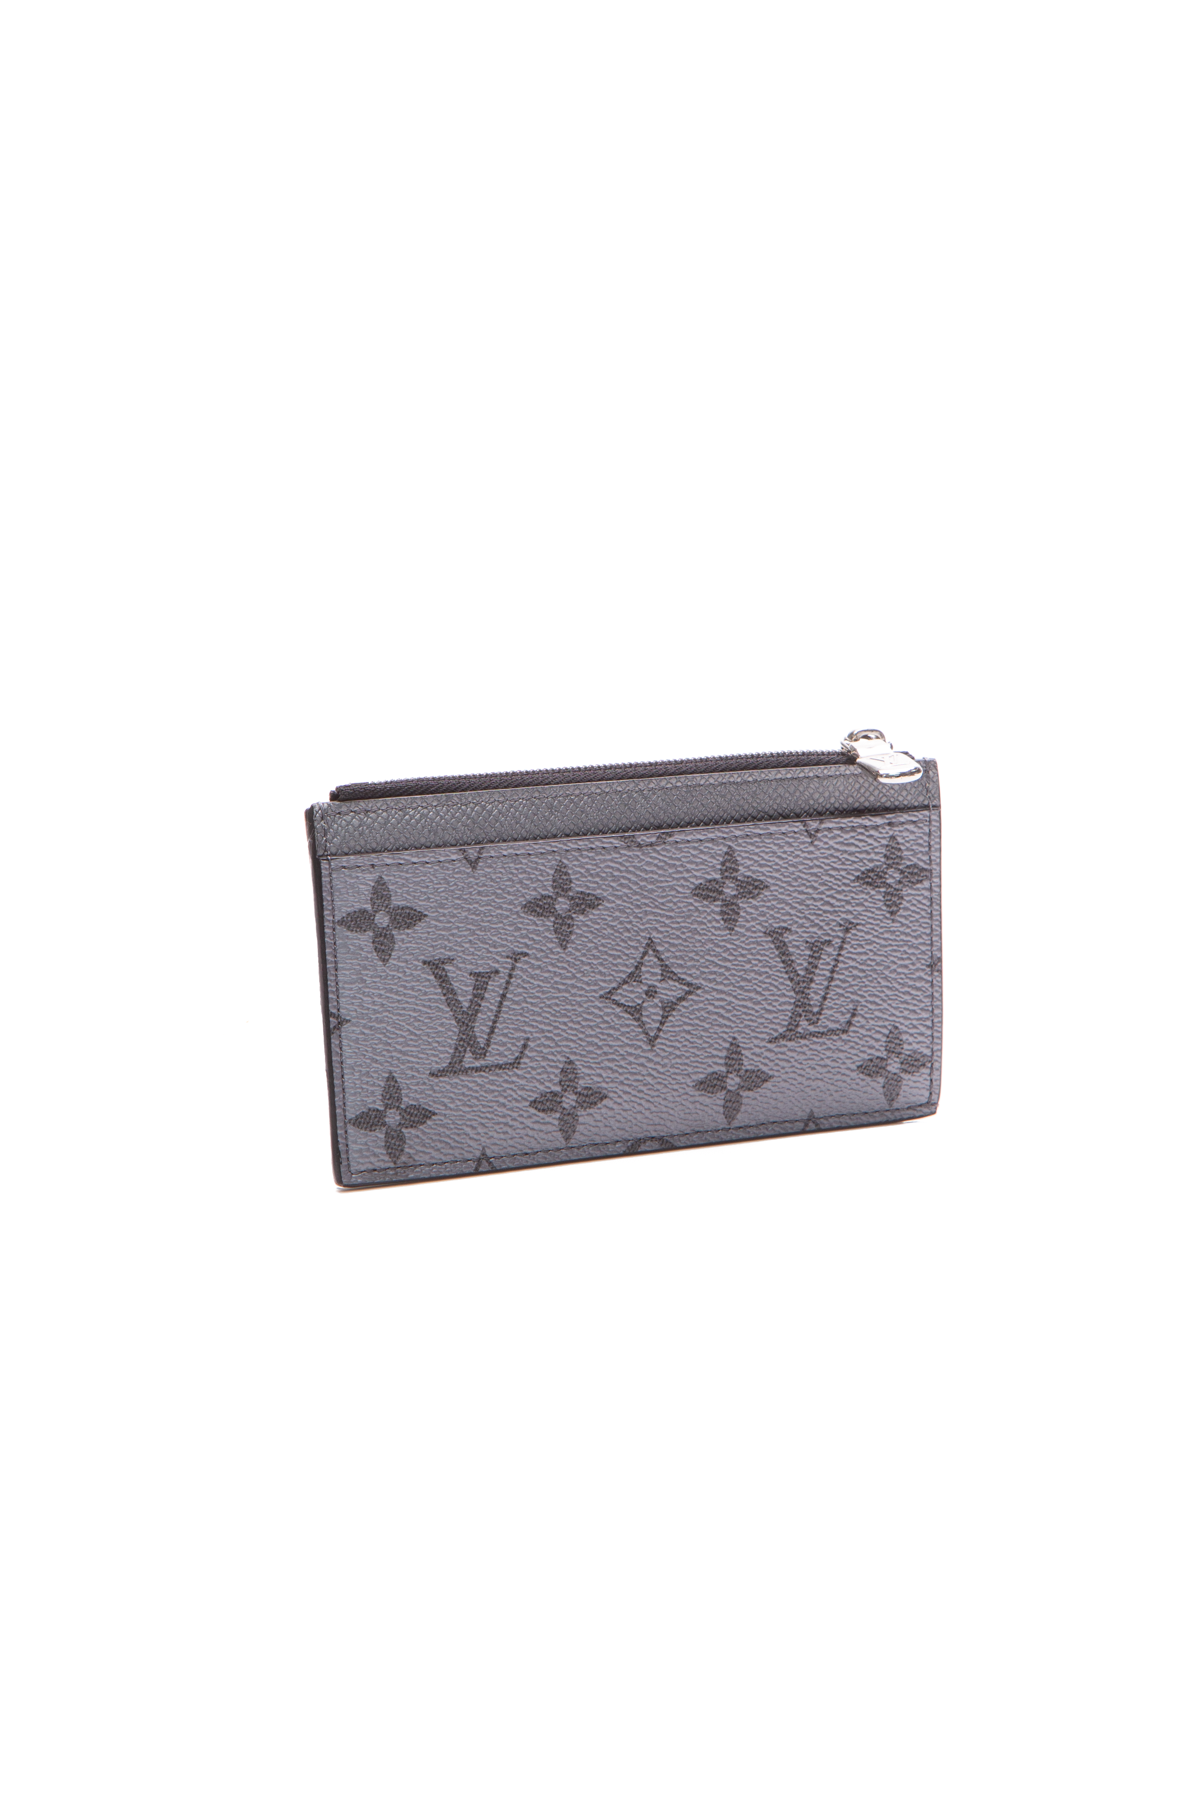 Louis Vuitton Silver Mono Coin Card Holder